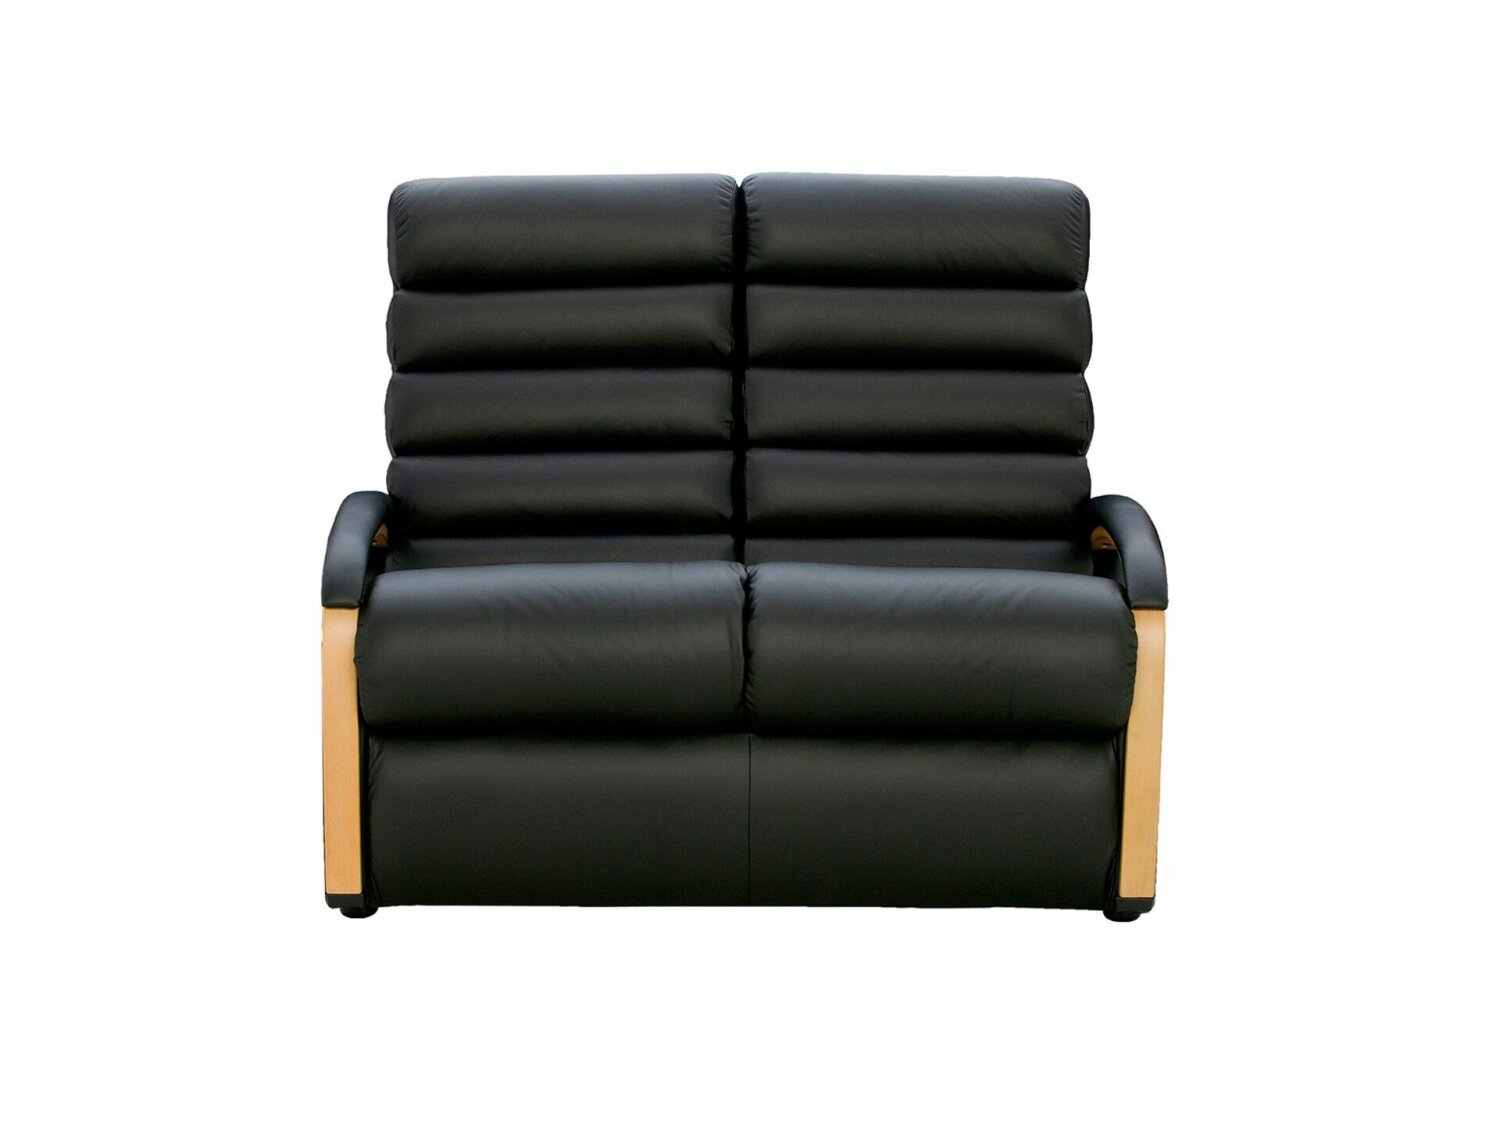 Anika La-Z-Boy 2 Seater Sofa